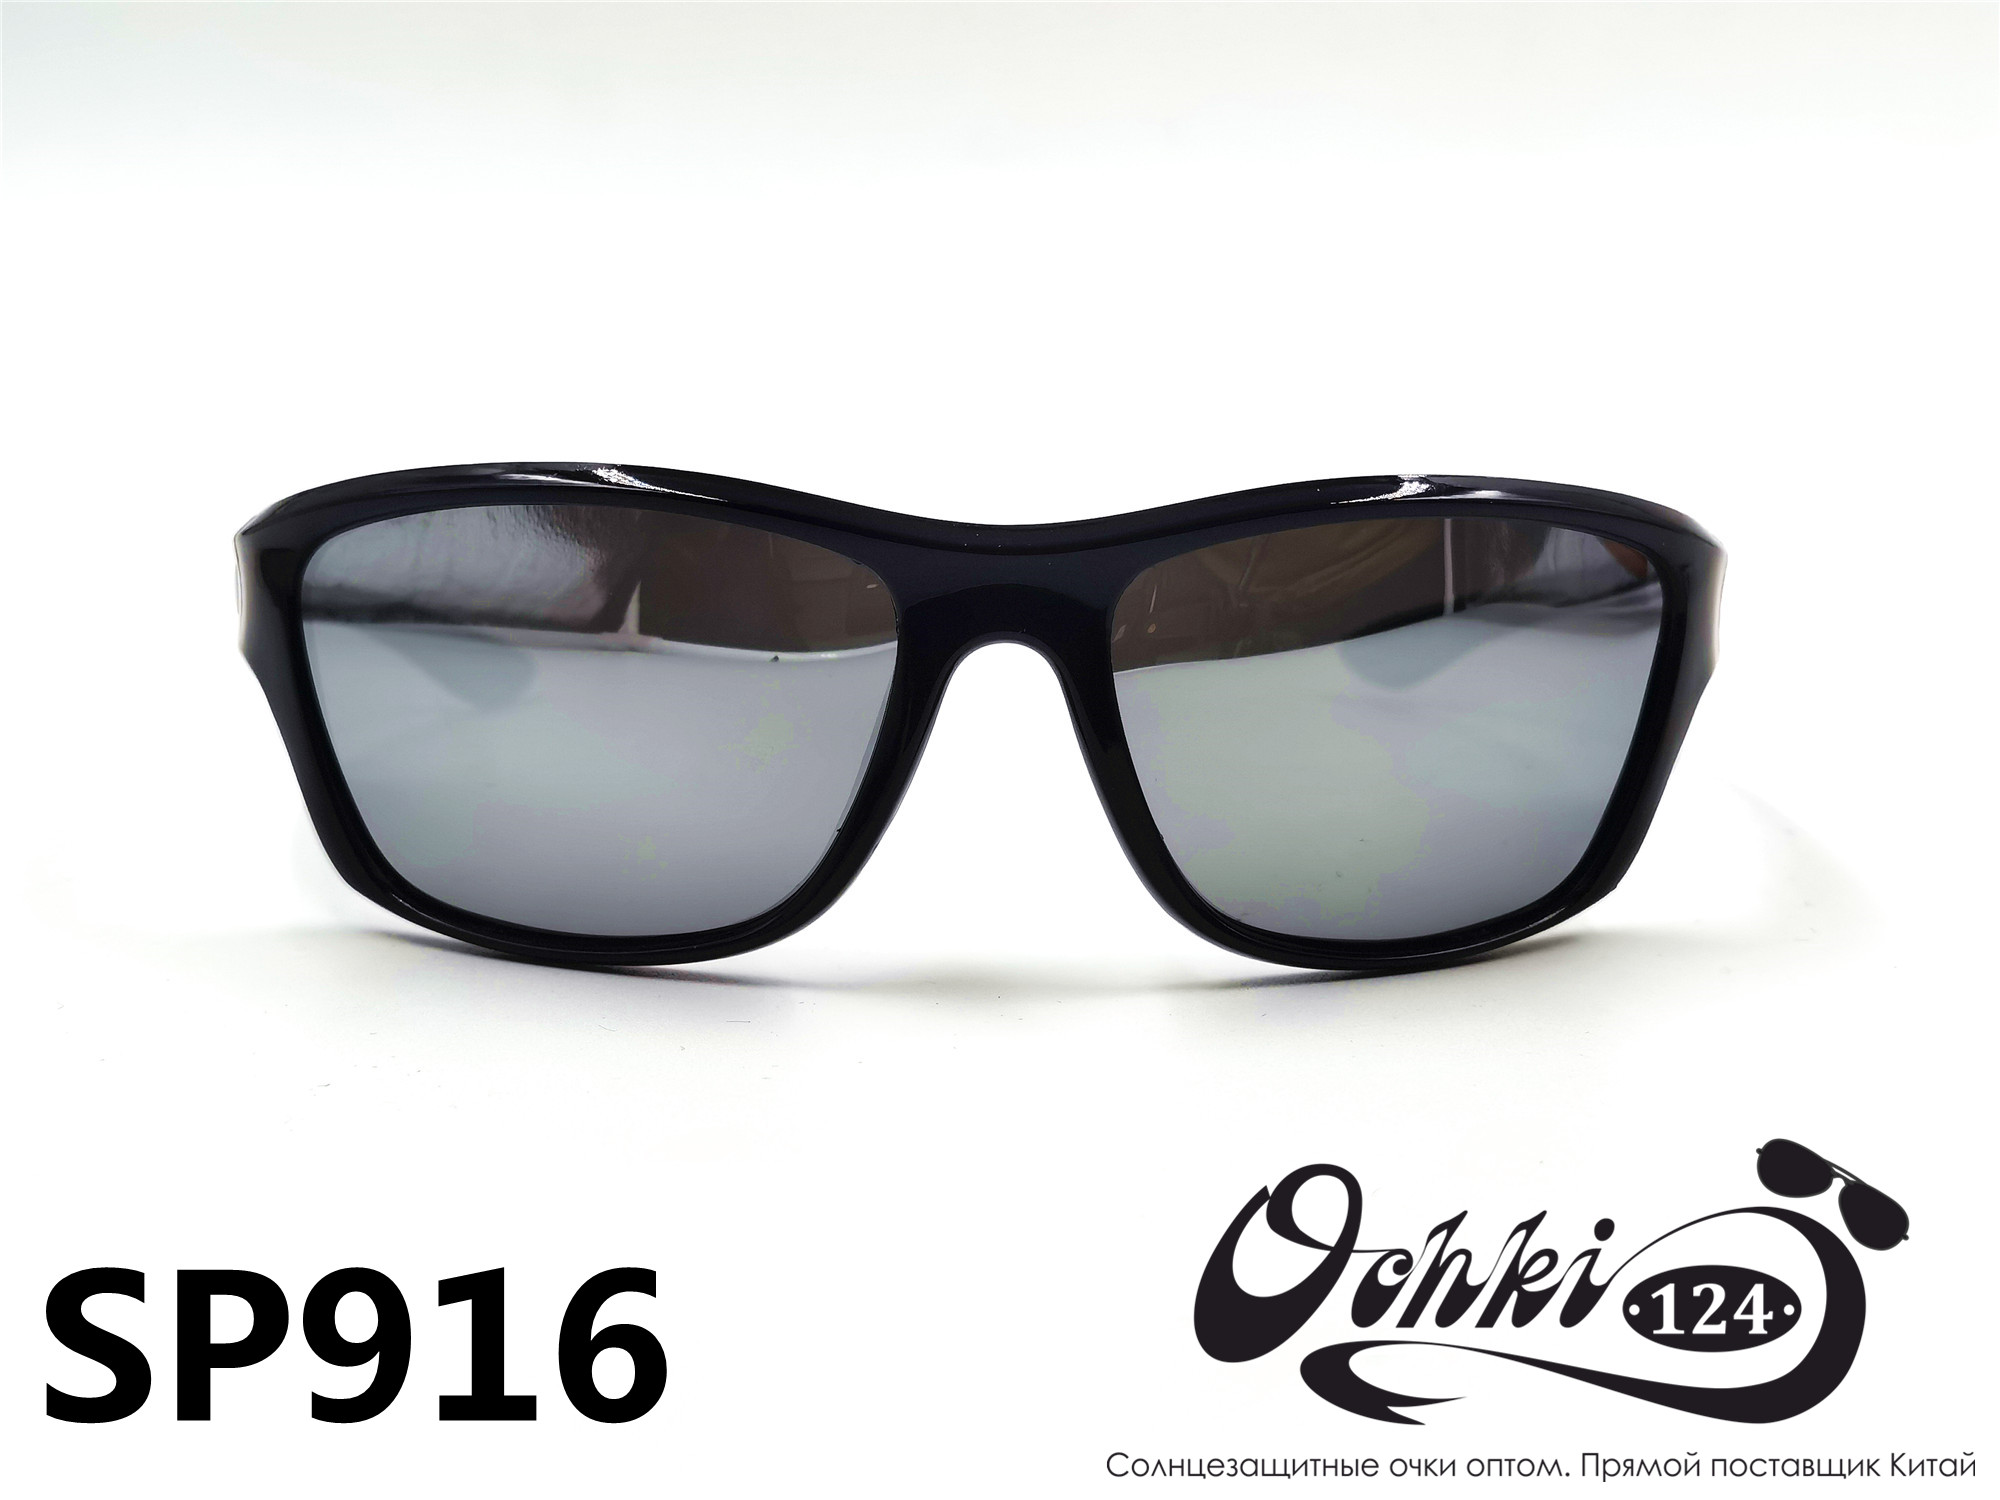  Солнцезащитные очки картинка 2022 Мужские спорт Поляризованные Materice PS916-7 